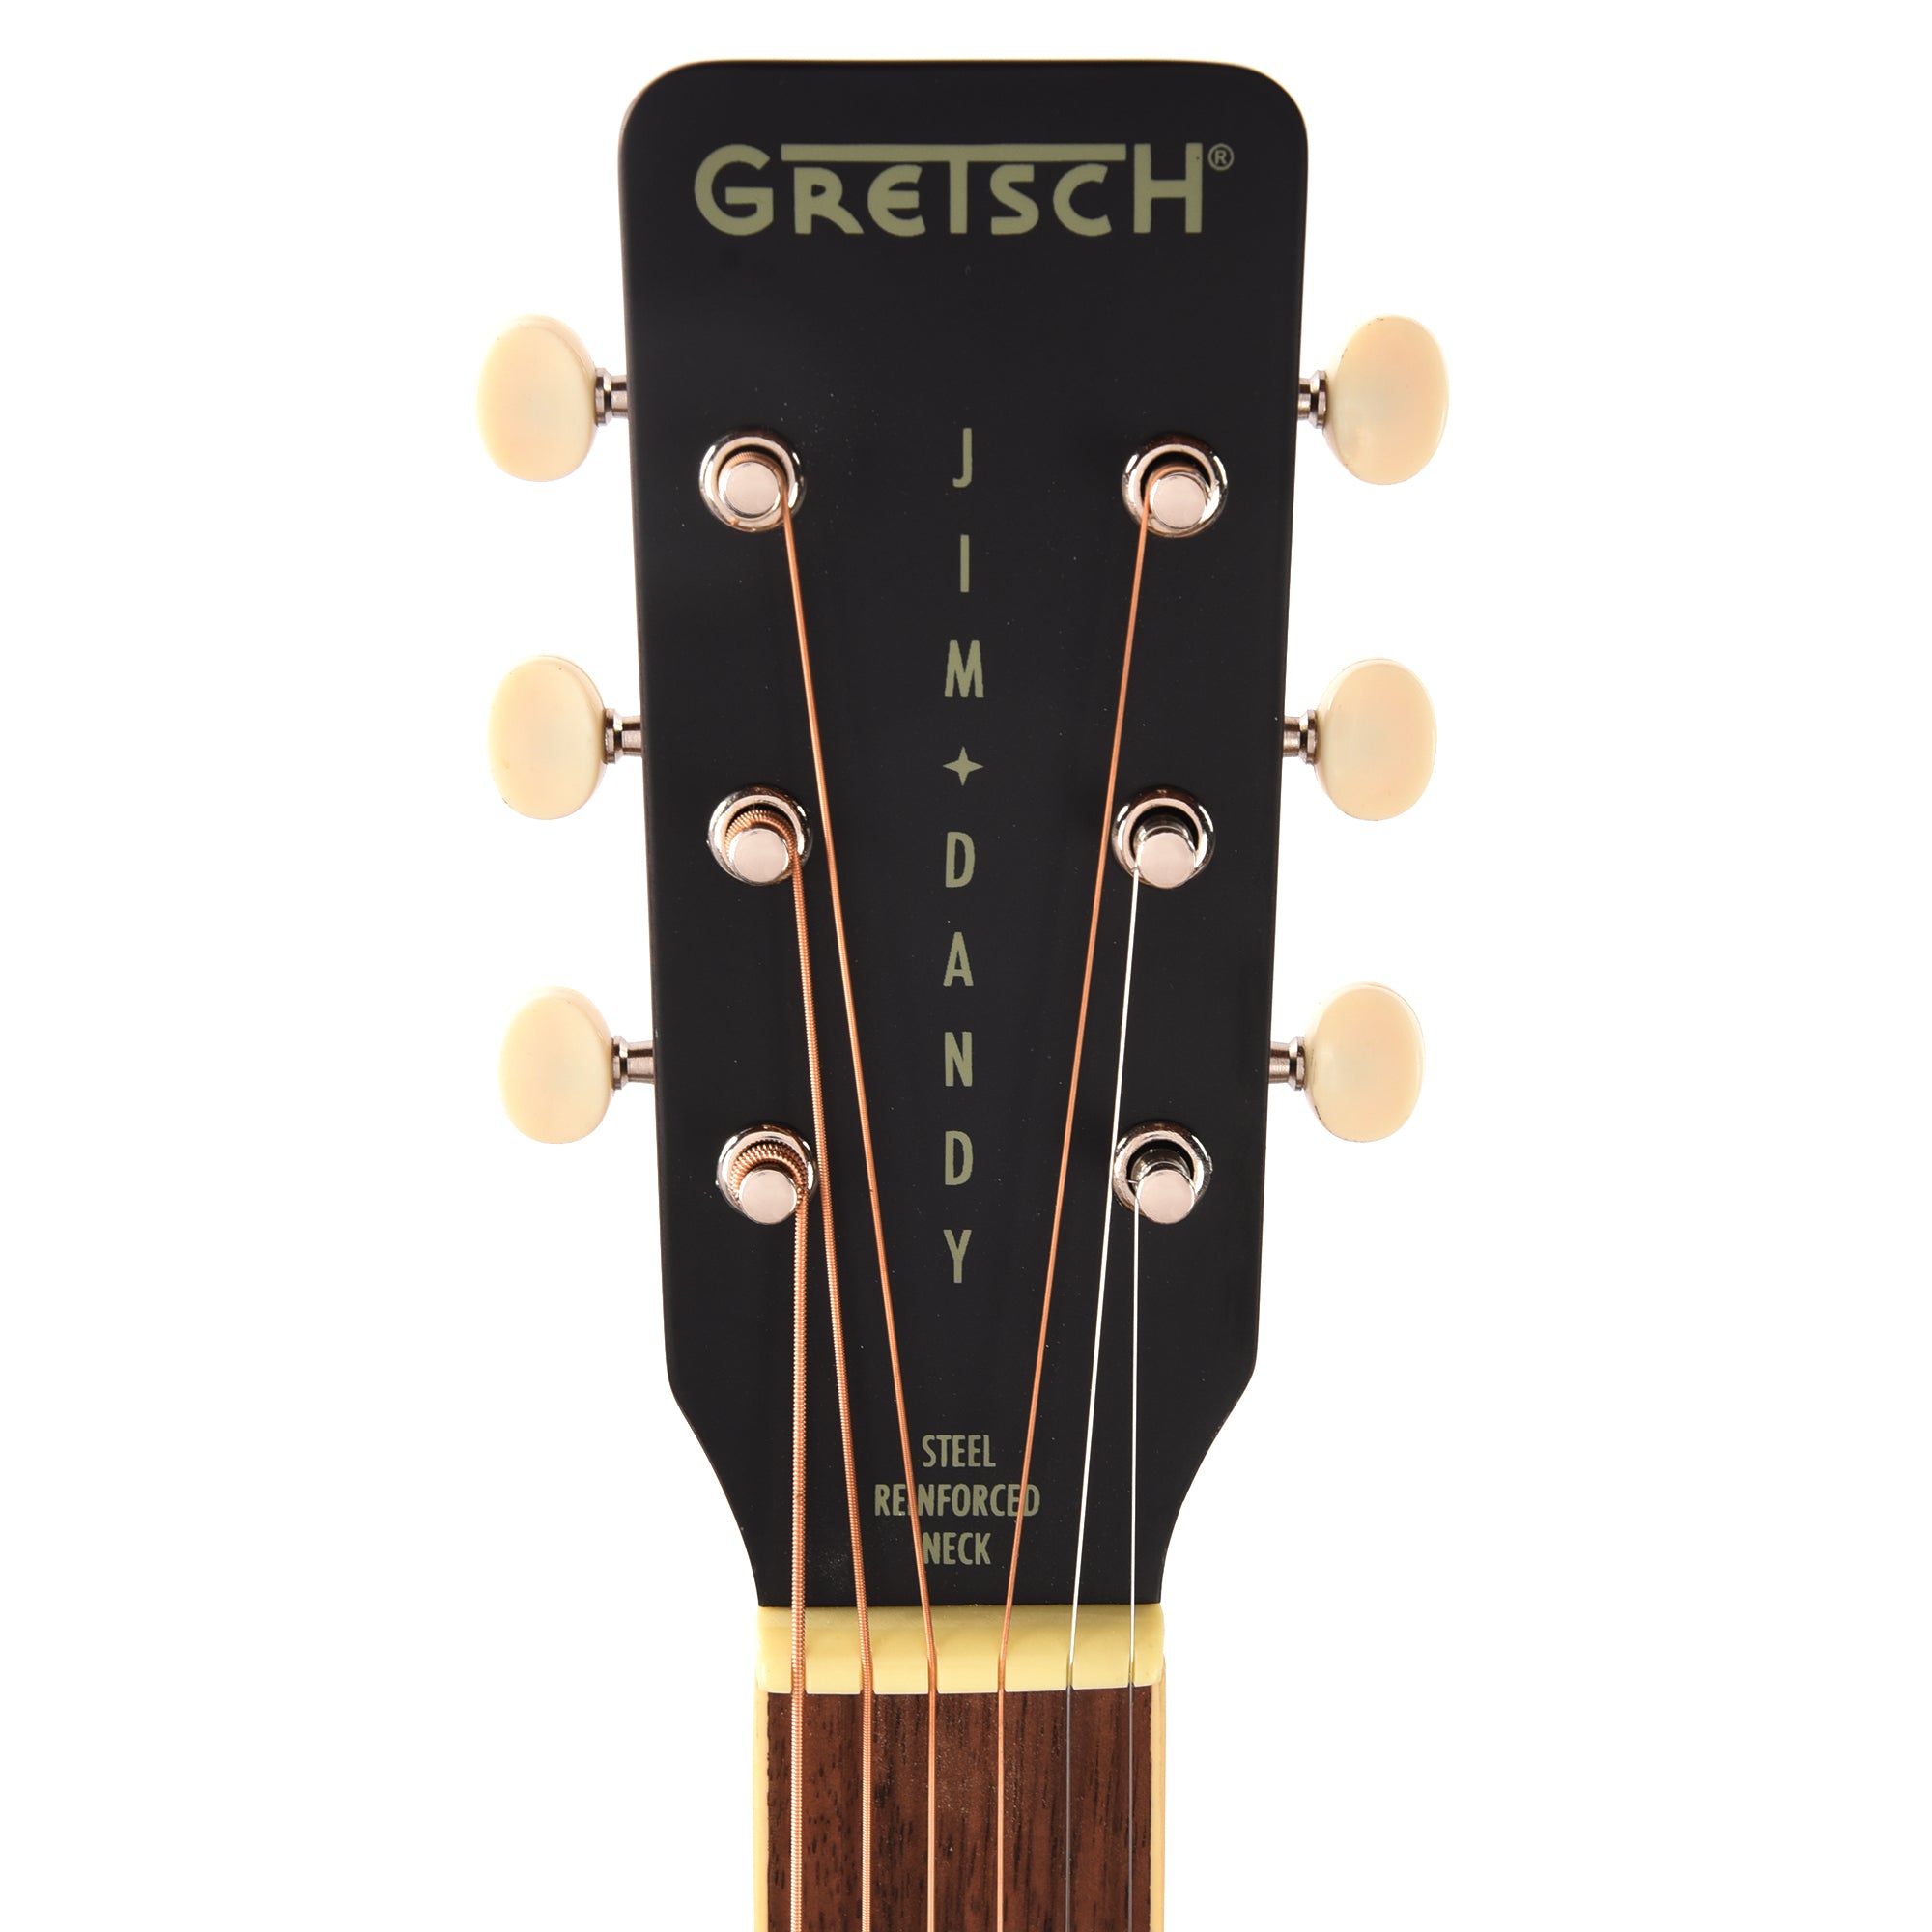 Gretsch Jim Dandy Concert Acoustic Guitar Rex Burst